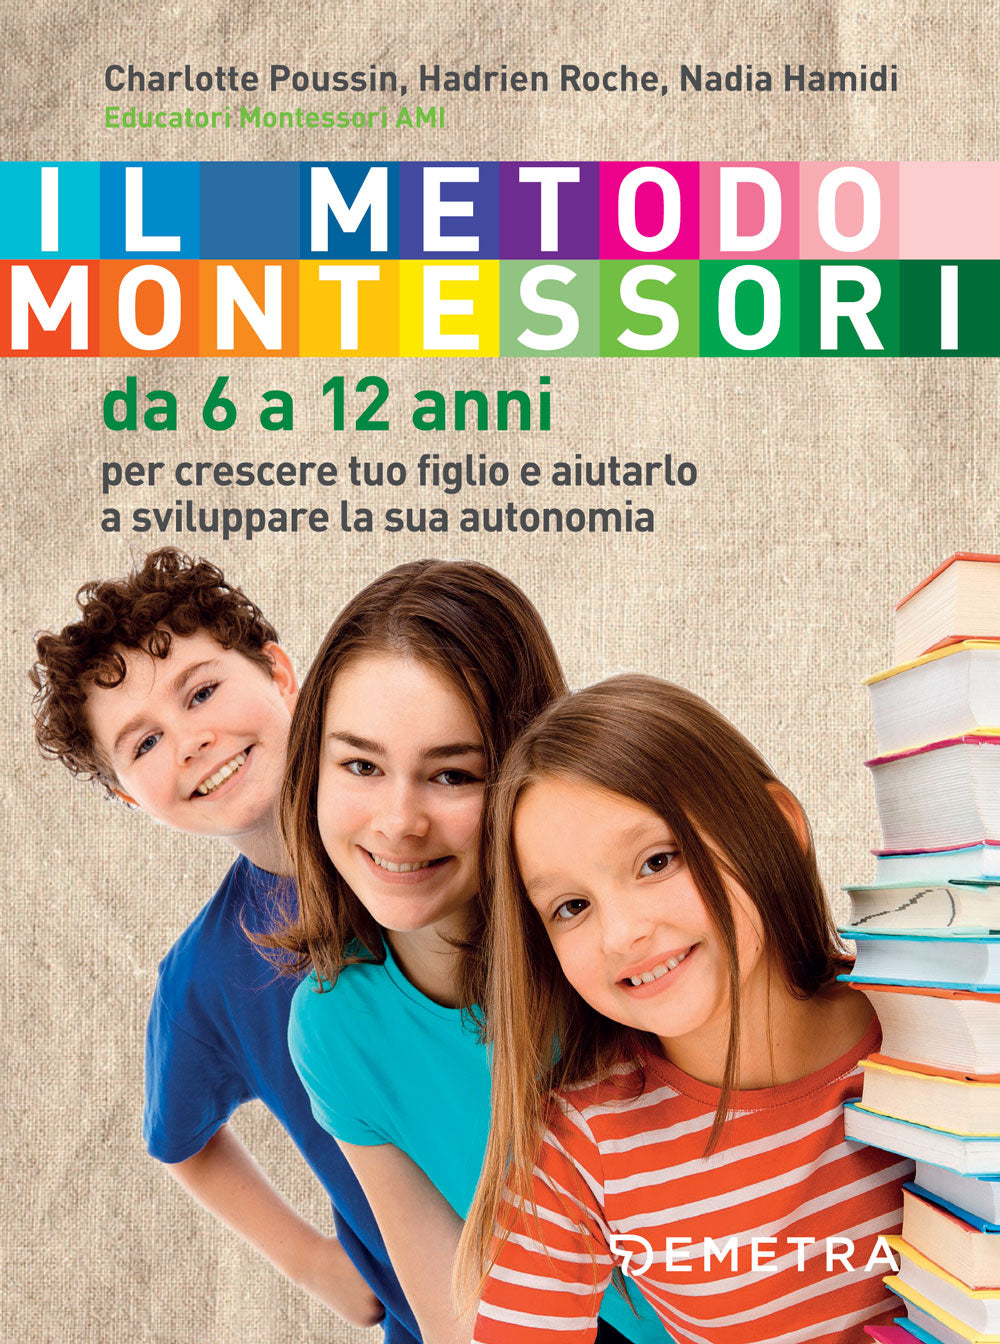 Il metodo Montessori da 6 a 12 anni ::Per crescere tuo figlio e aiutarlo a sviluppare la sua autonomia